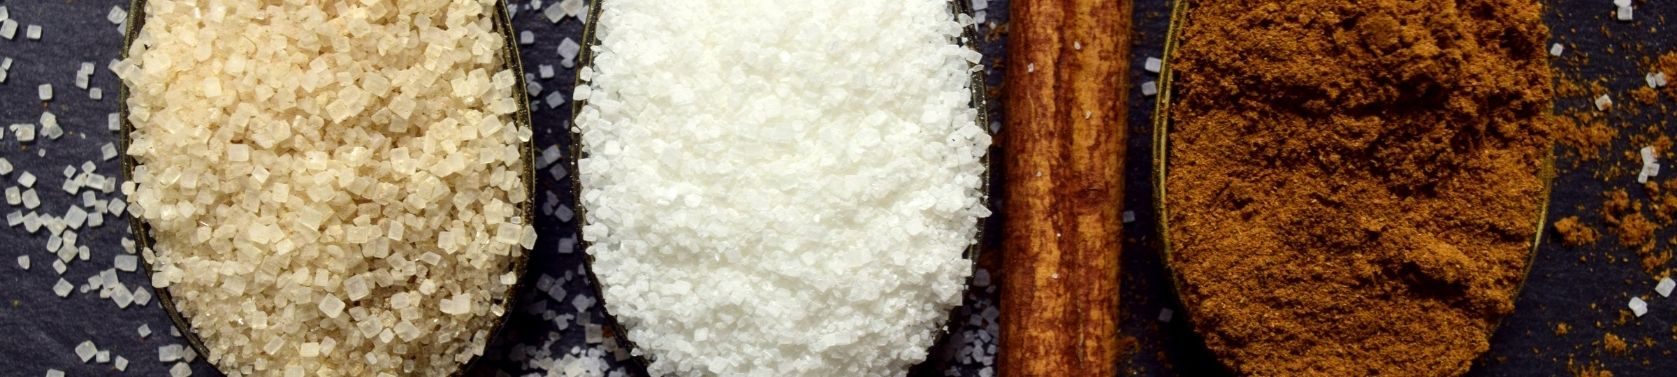 Zuckeralkohole Xylit, Sorbit und Erythrit - der süße Zuckerersatz